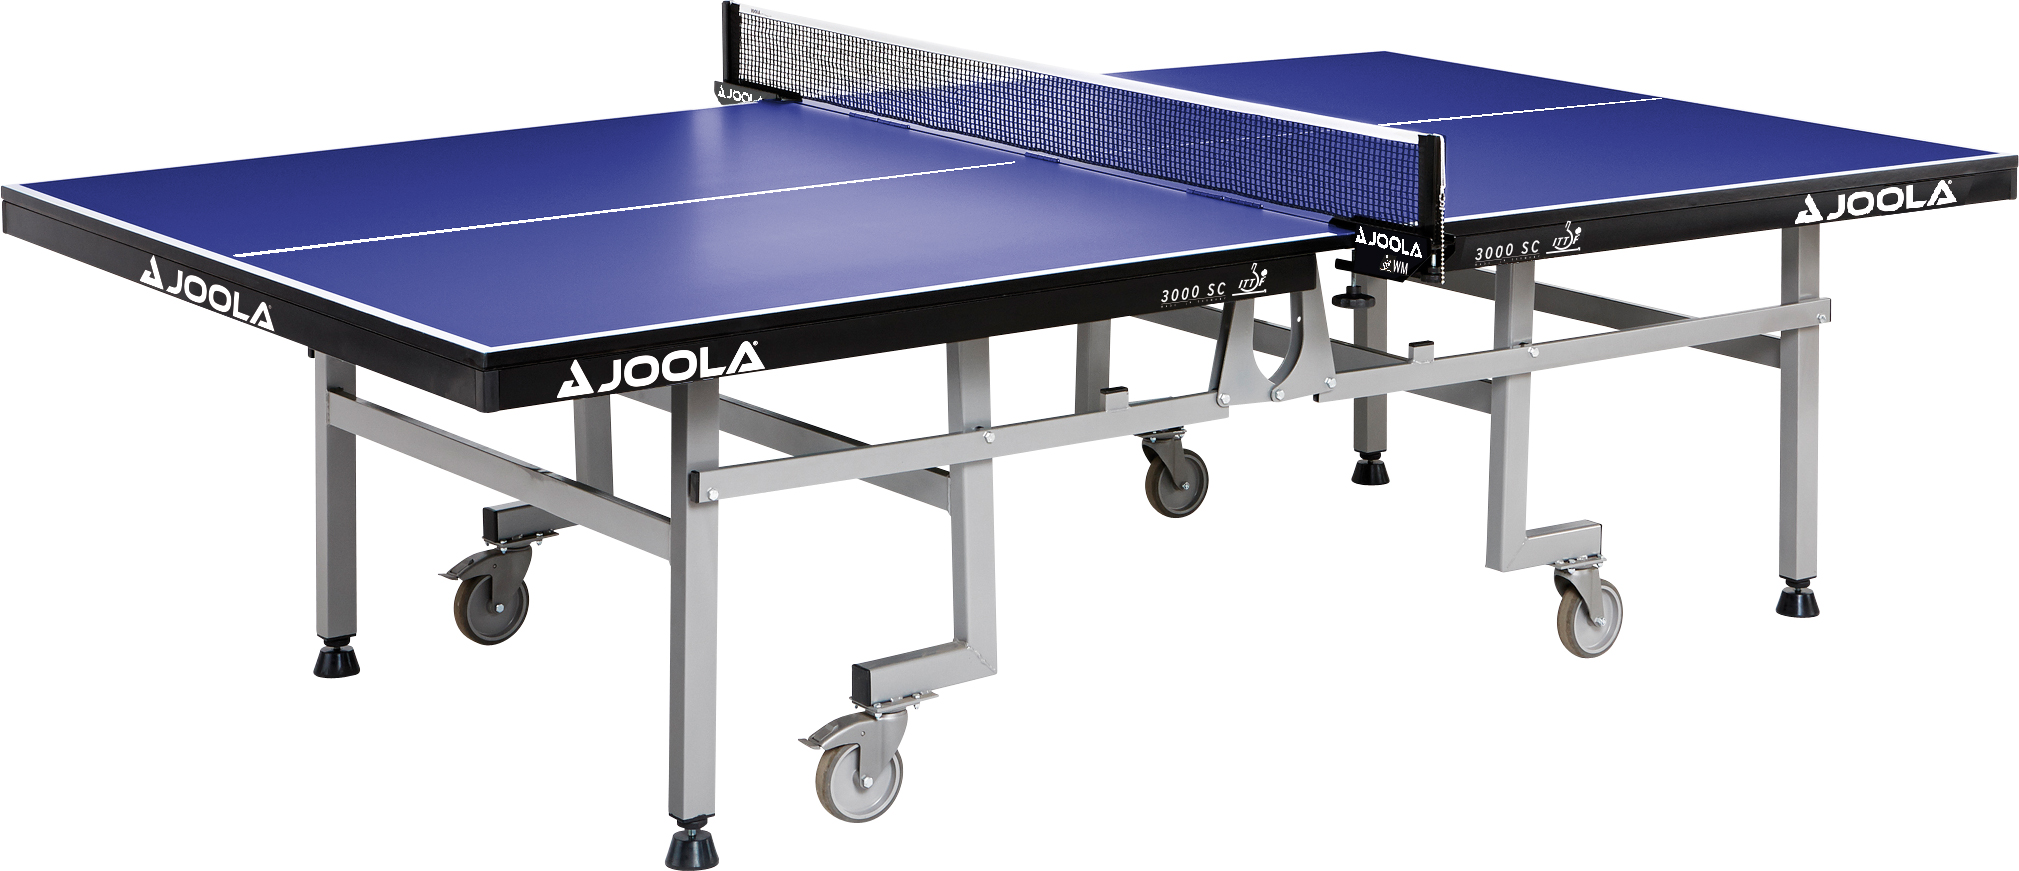 Joola Tischtennisplatte 3000 SC Pro Wettkampf-Platte 22 mm | Indoor |  Tischtennis | Freizeit & Wellness